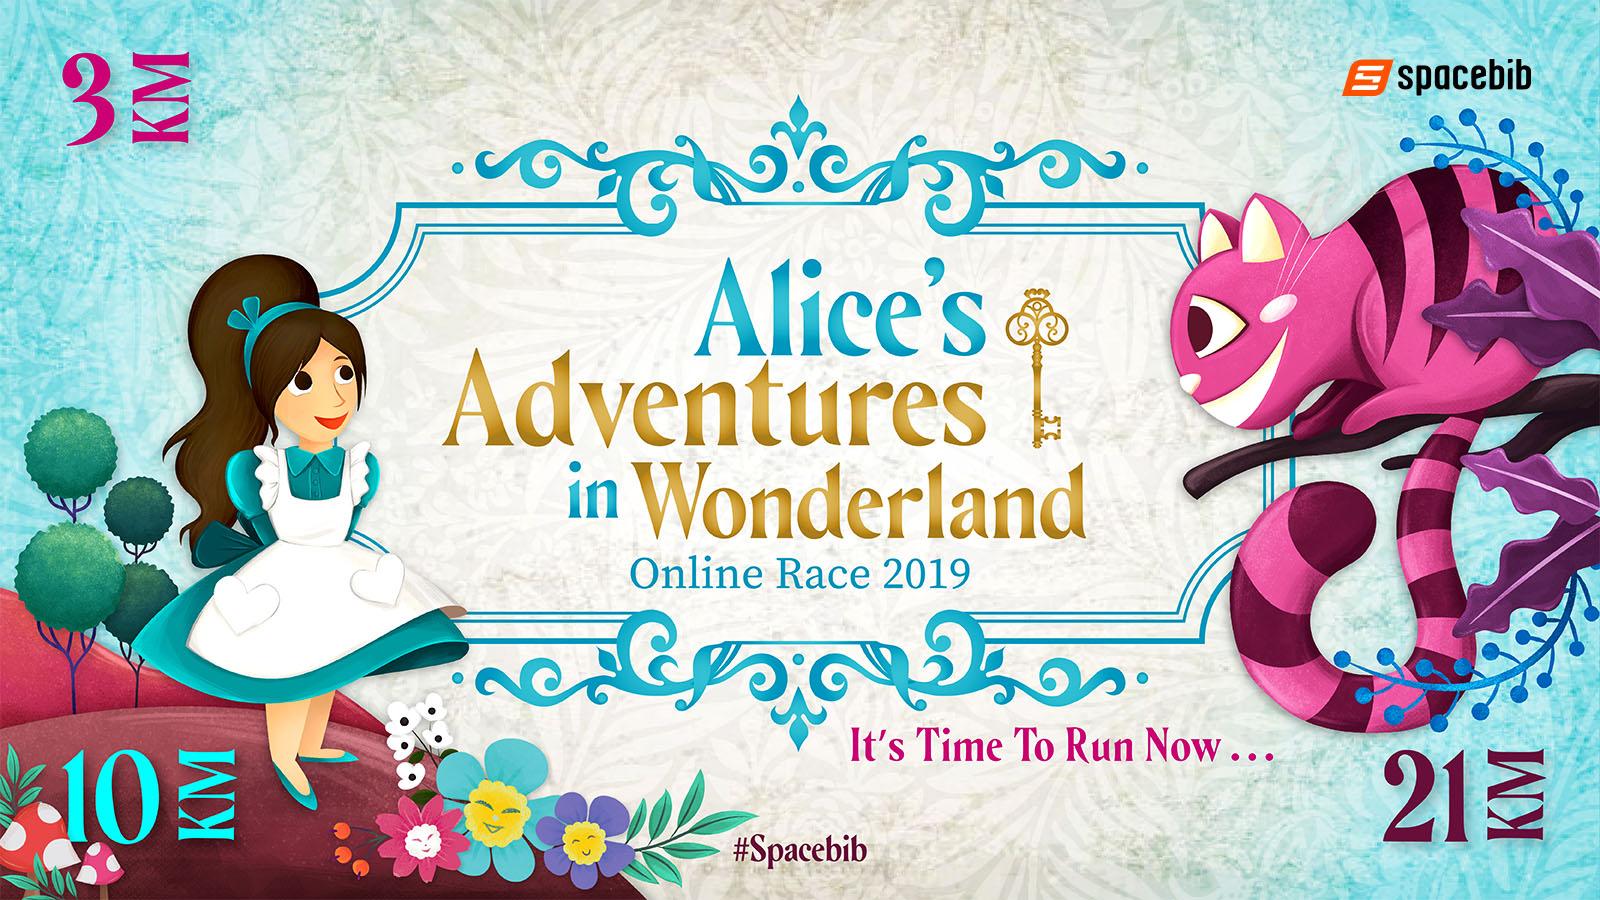 Alice's Adventures in Wonderland Online Race 2019